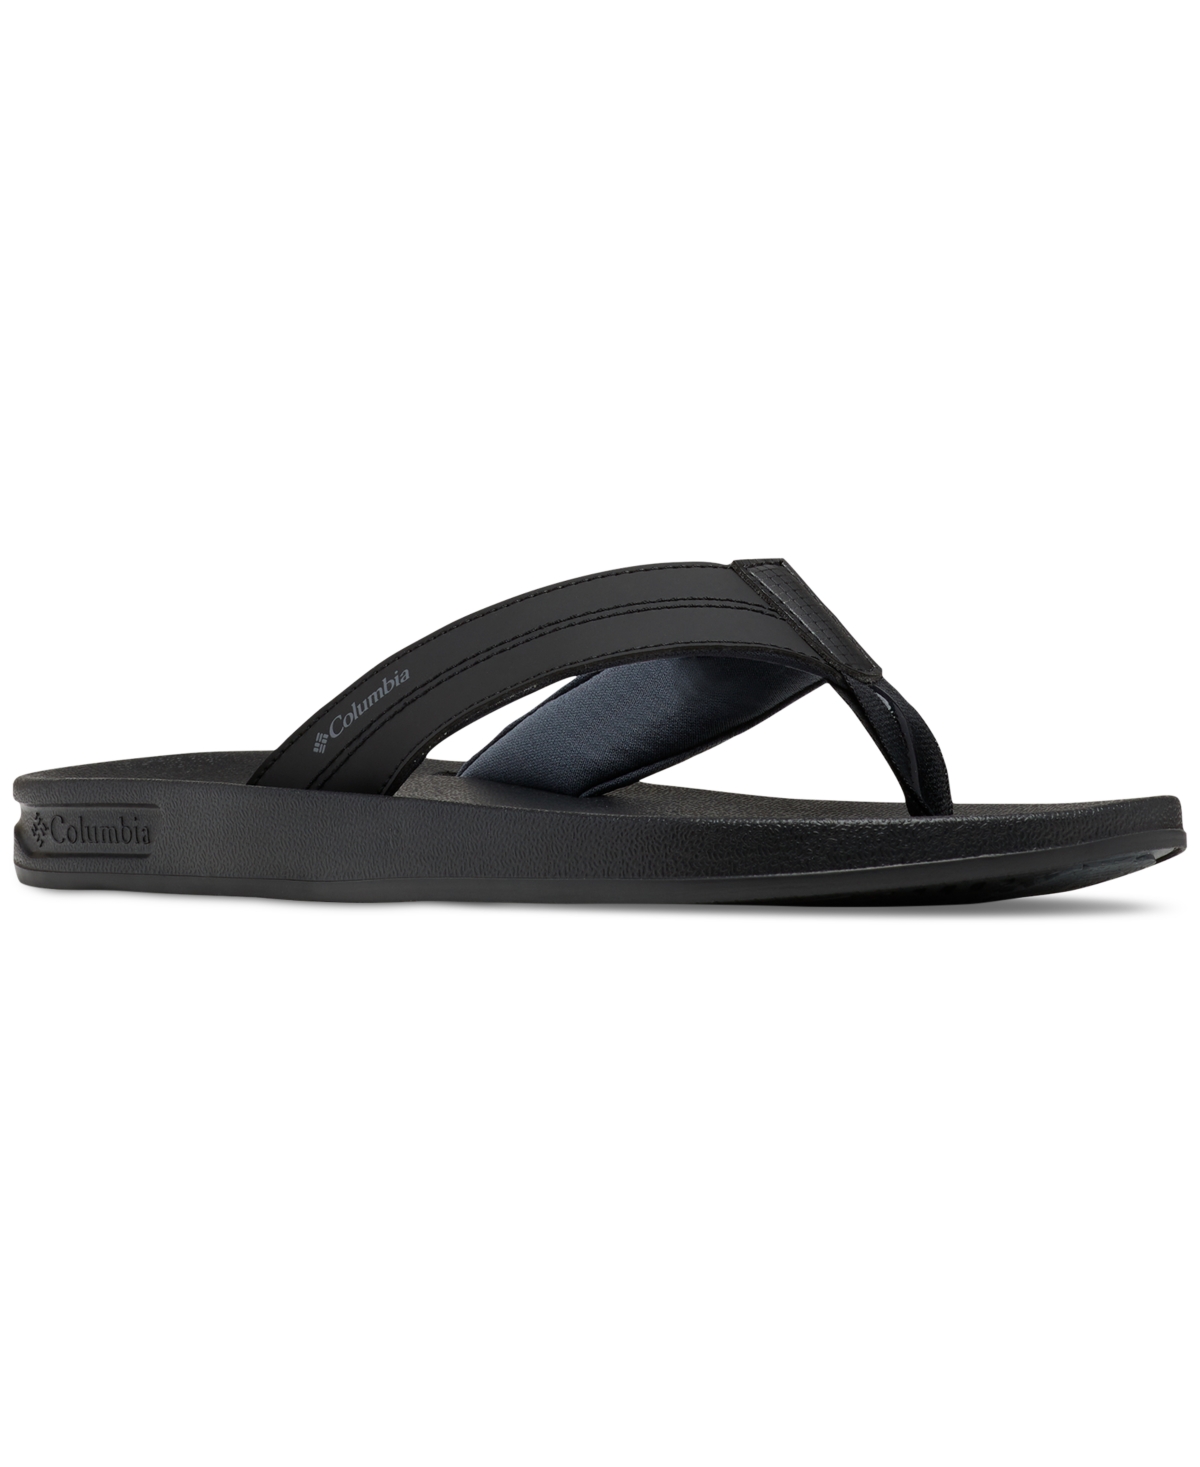 Men's Hood River Flip-Flop Sandal - Black, Graphite